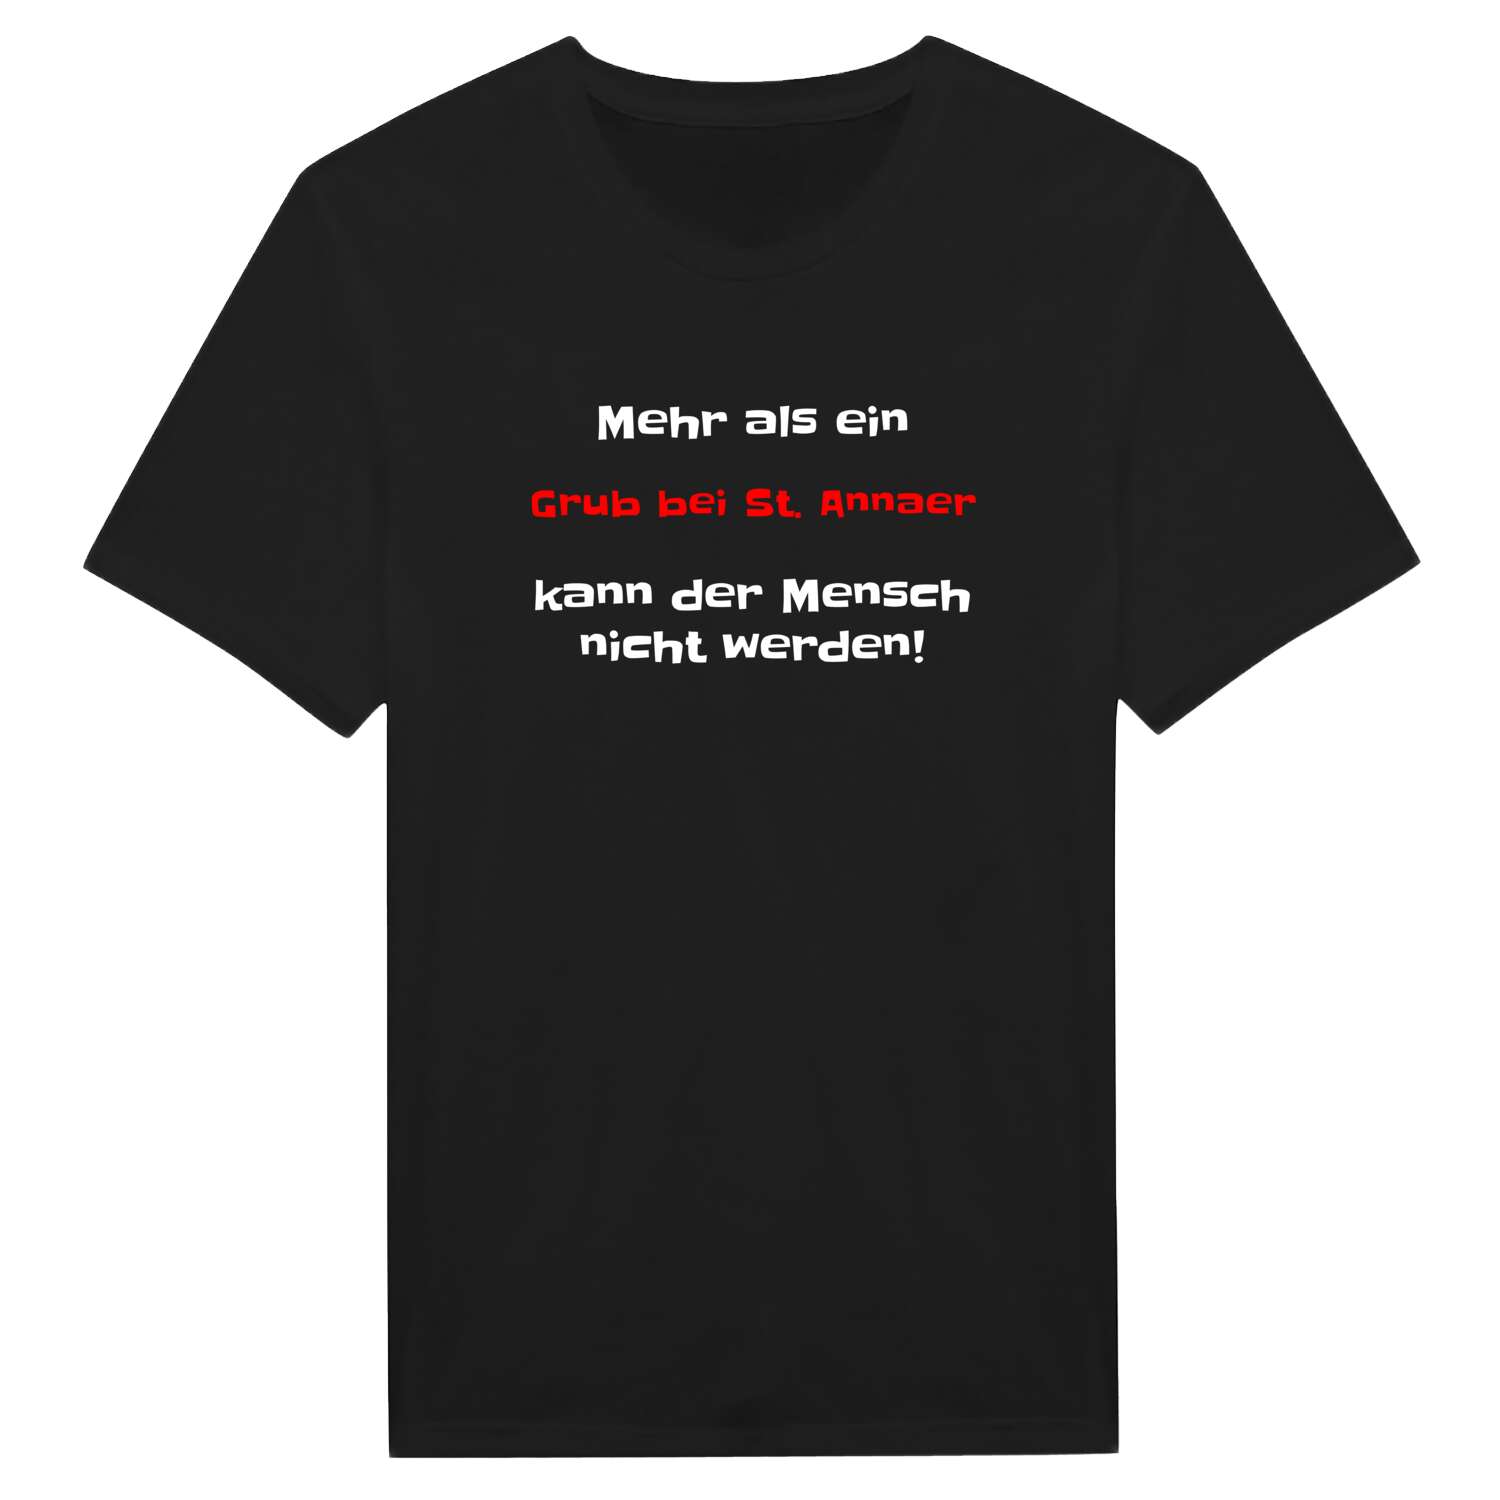 Grub bei St. Anna T-Shirt »Mehr als ein«